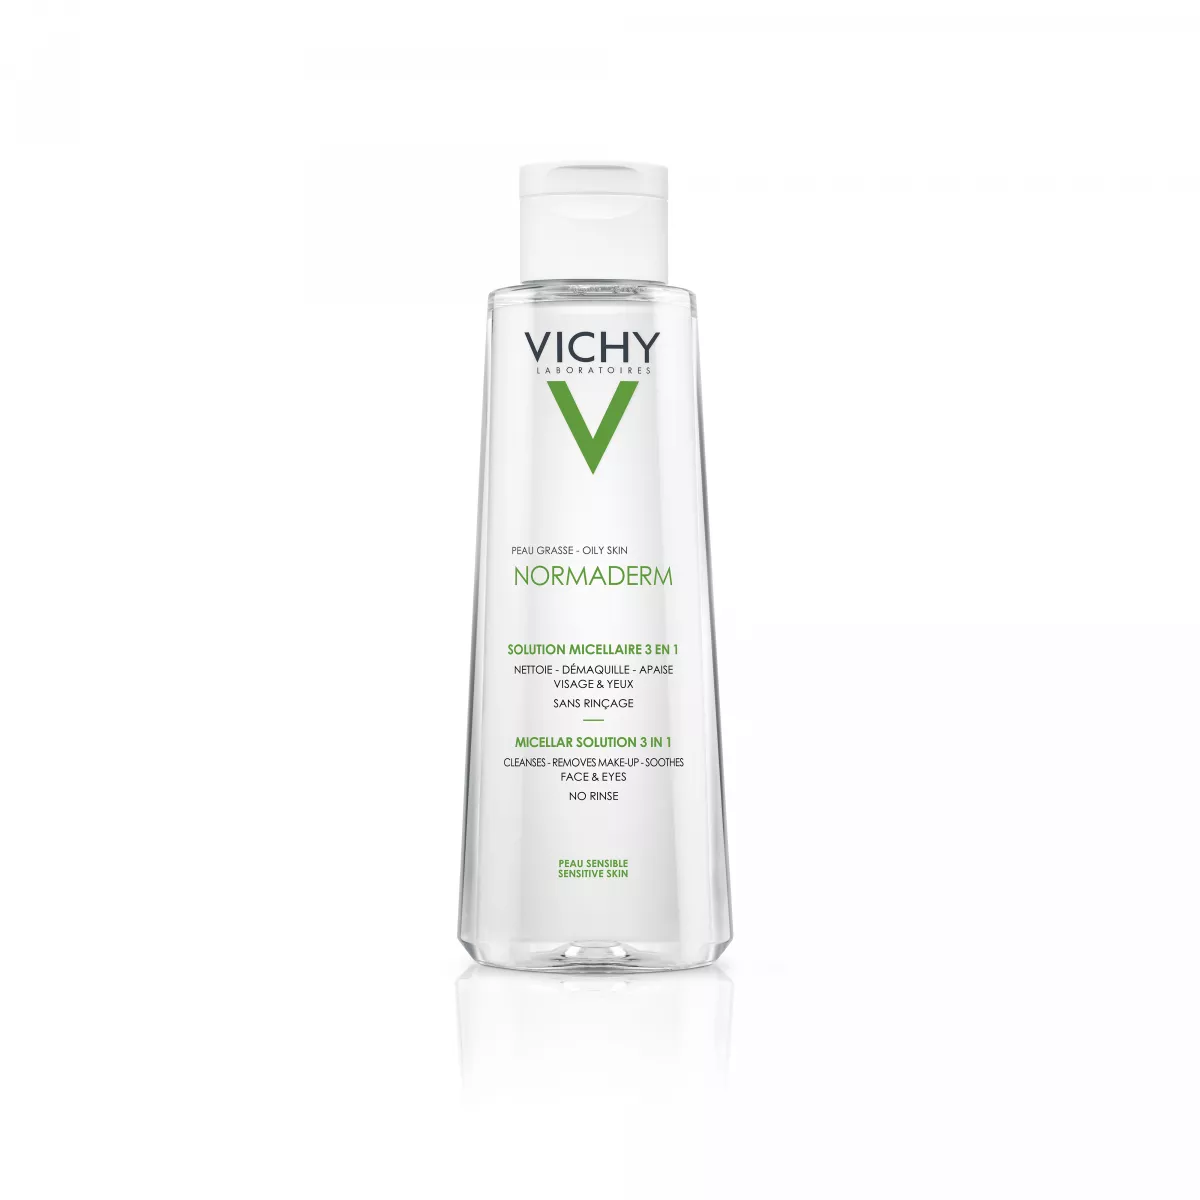 Vichy Normaderm solutie micelara de curatare si demachiere 200 ml, [],epastila.ro